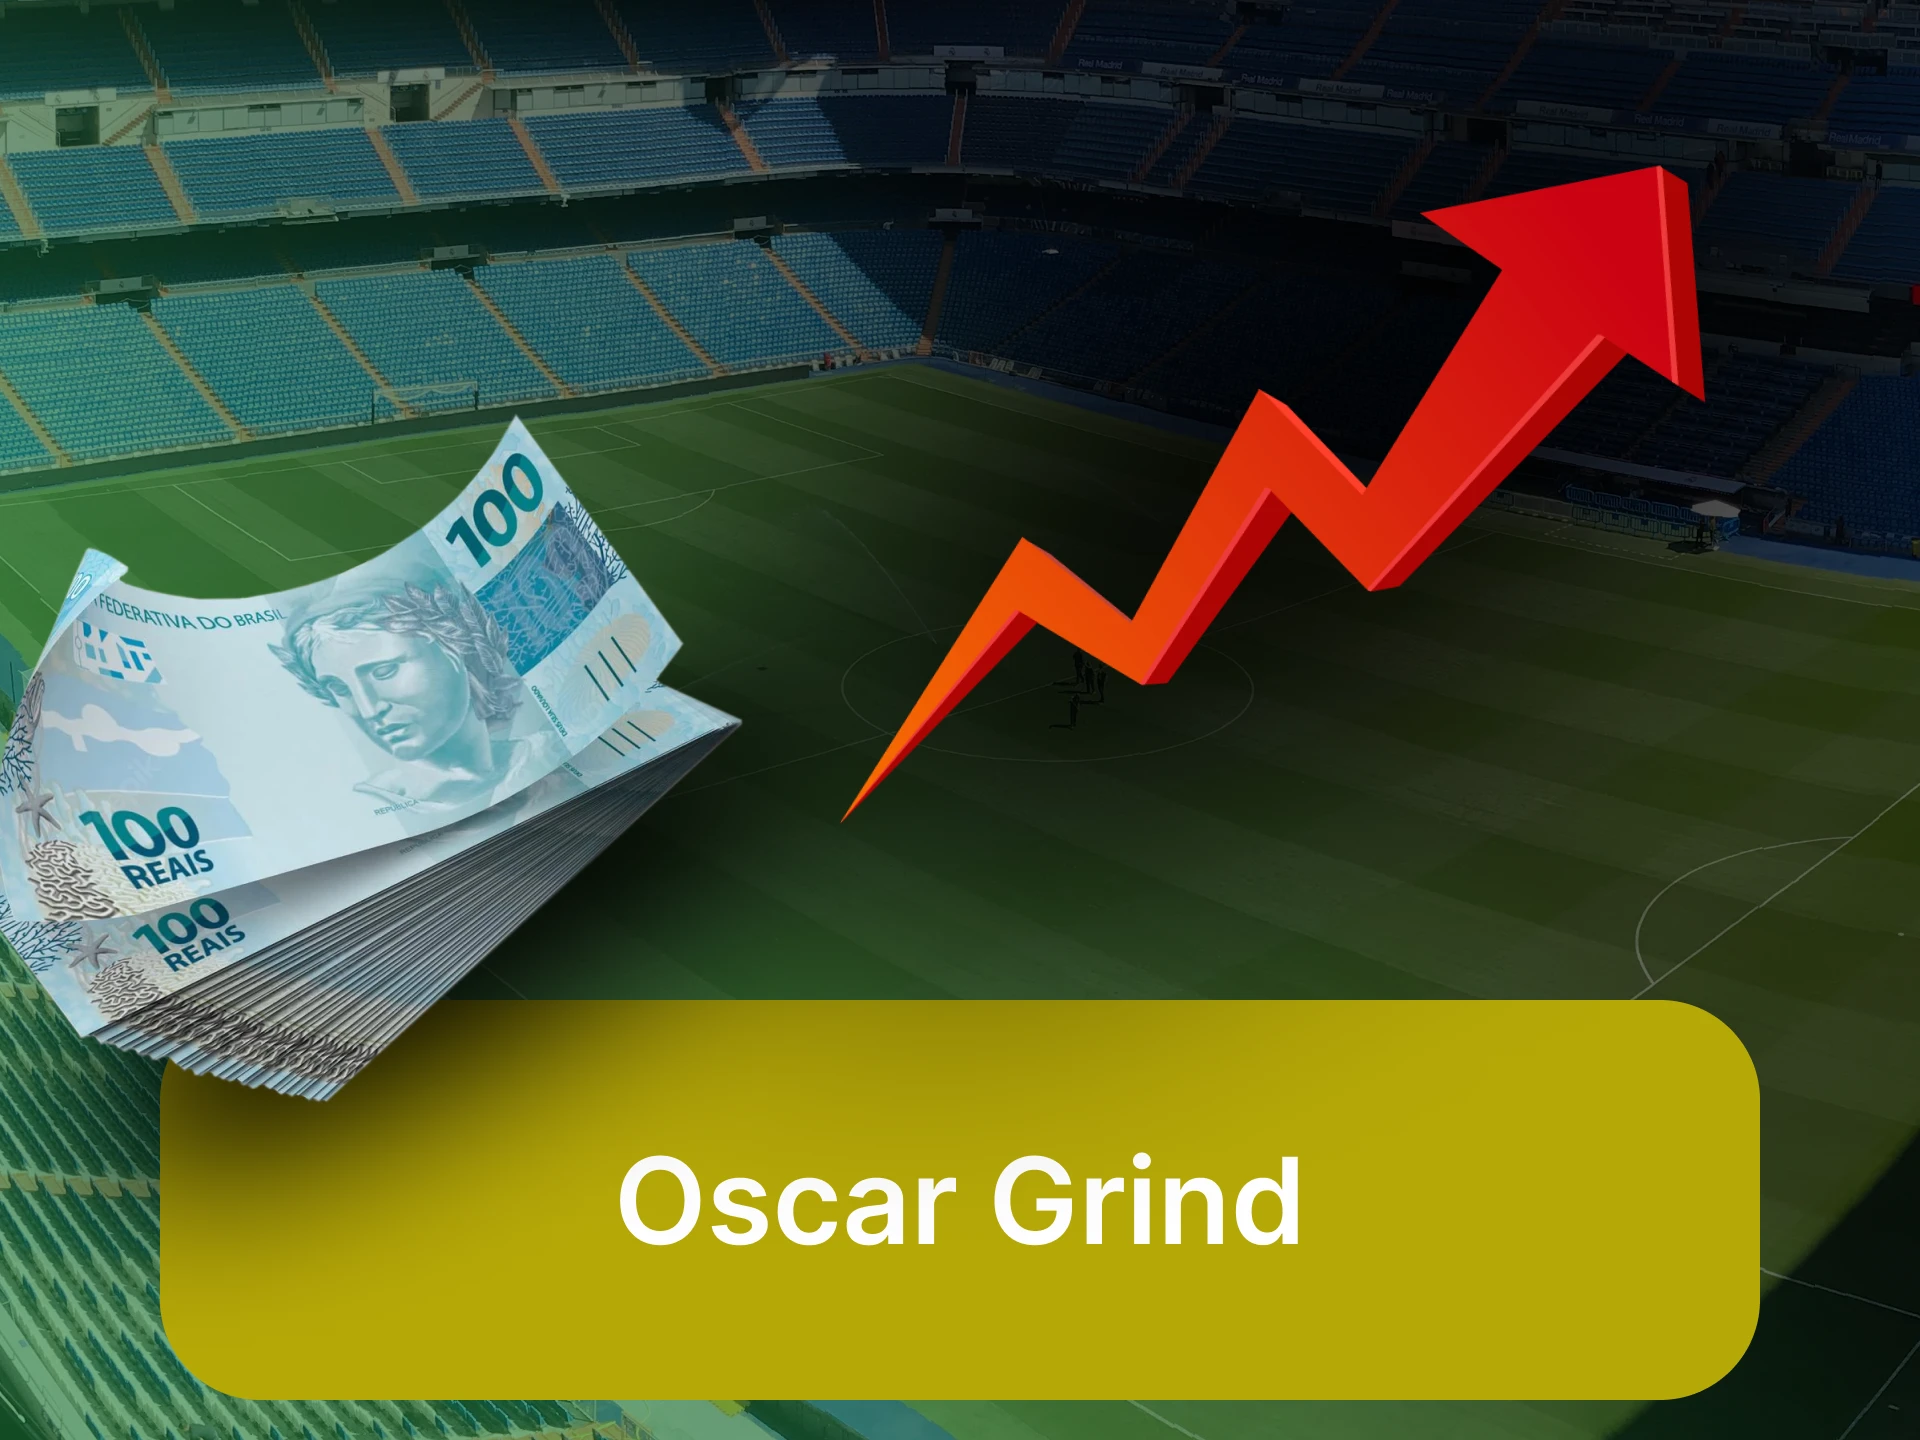 Para apostar no futebol, escolha a estratégia "Oscar Grind".